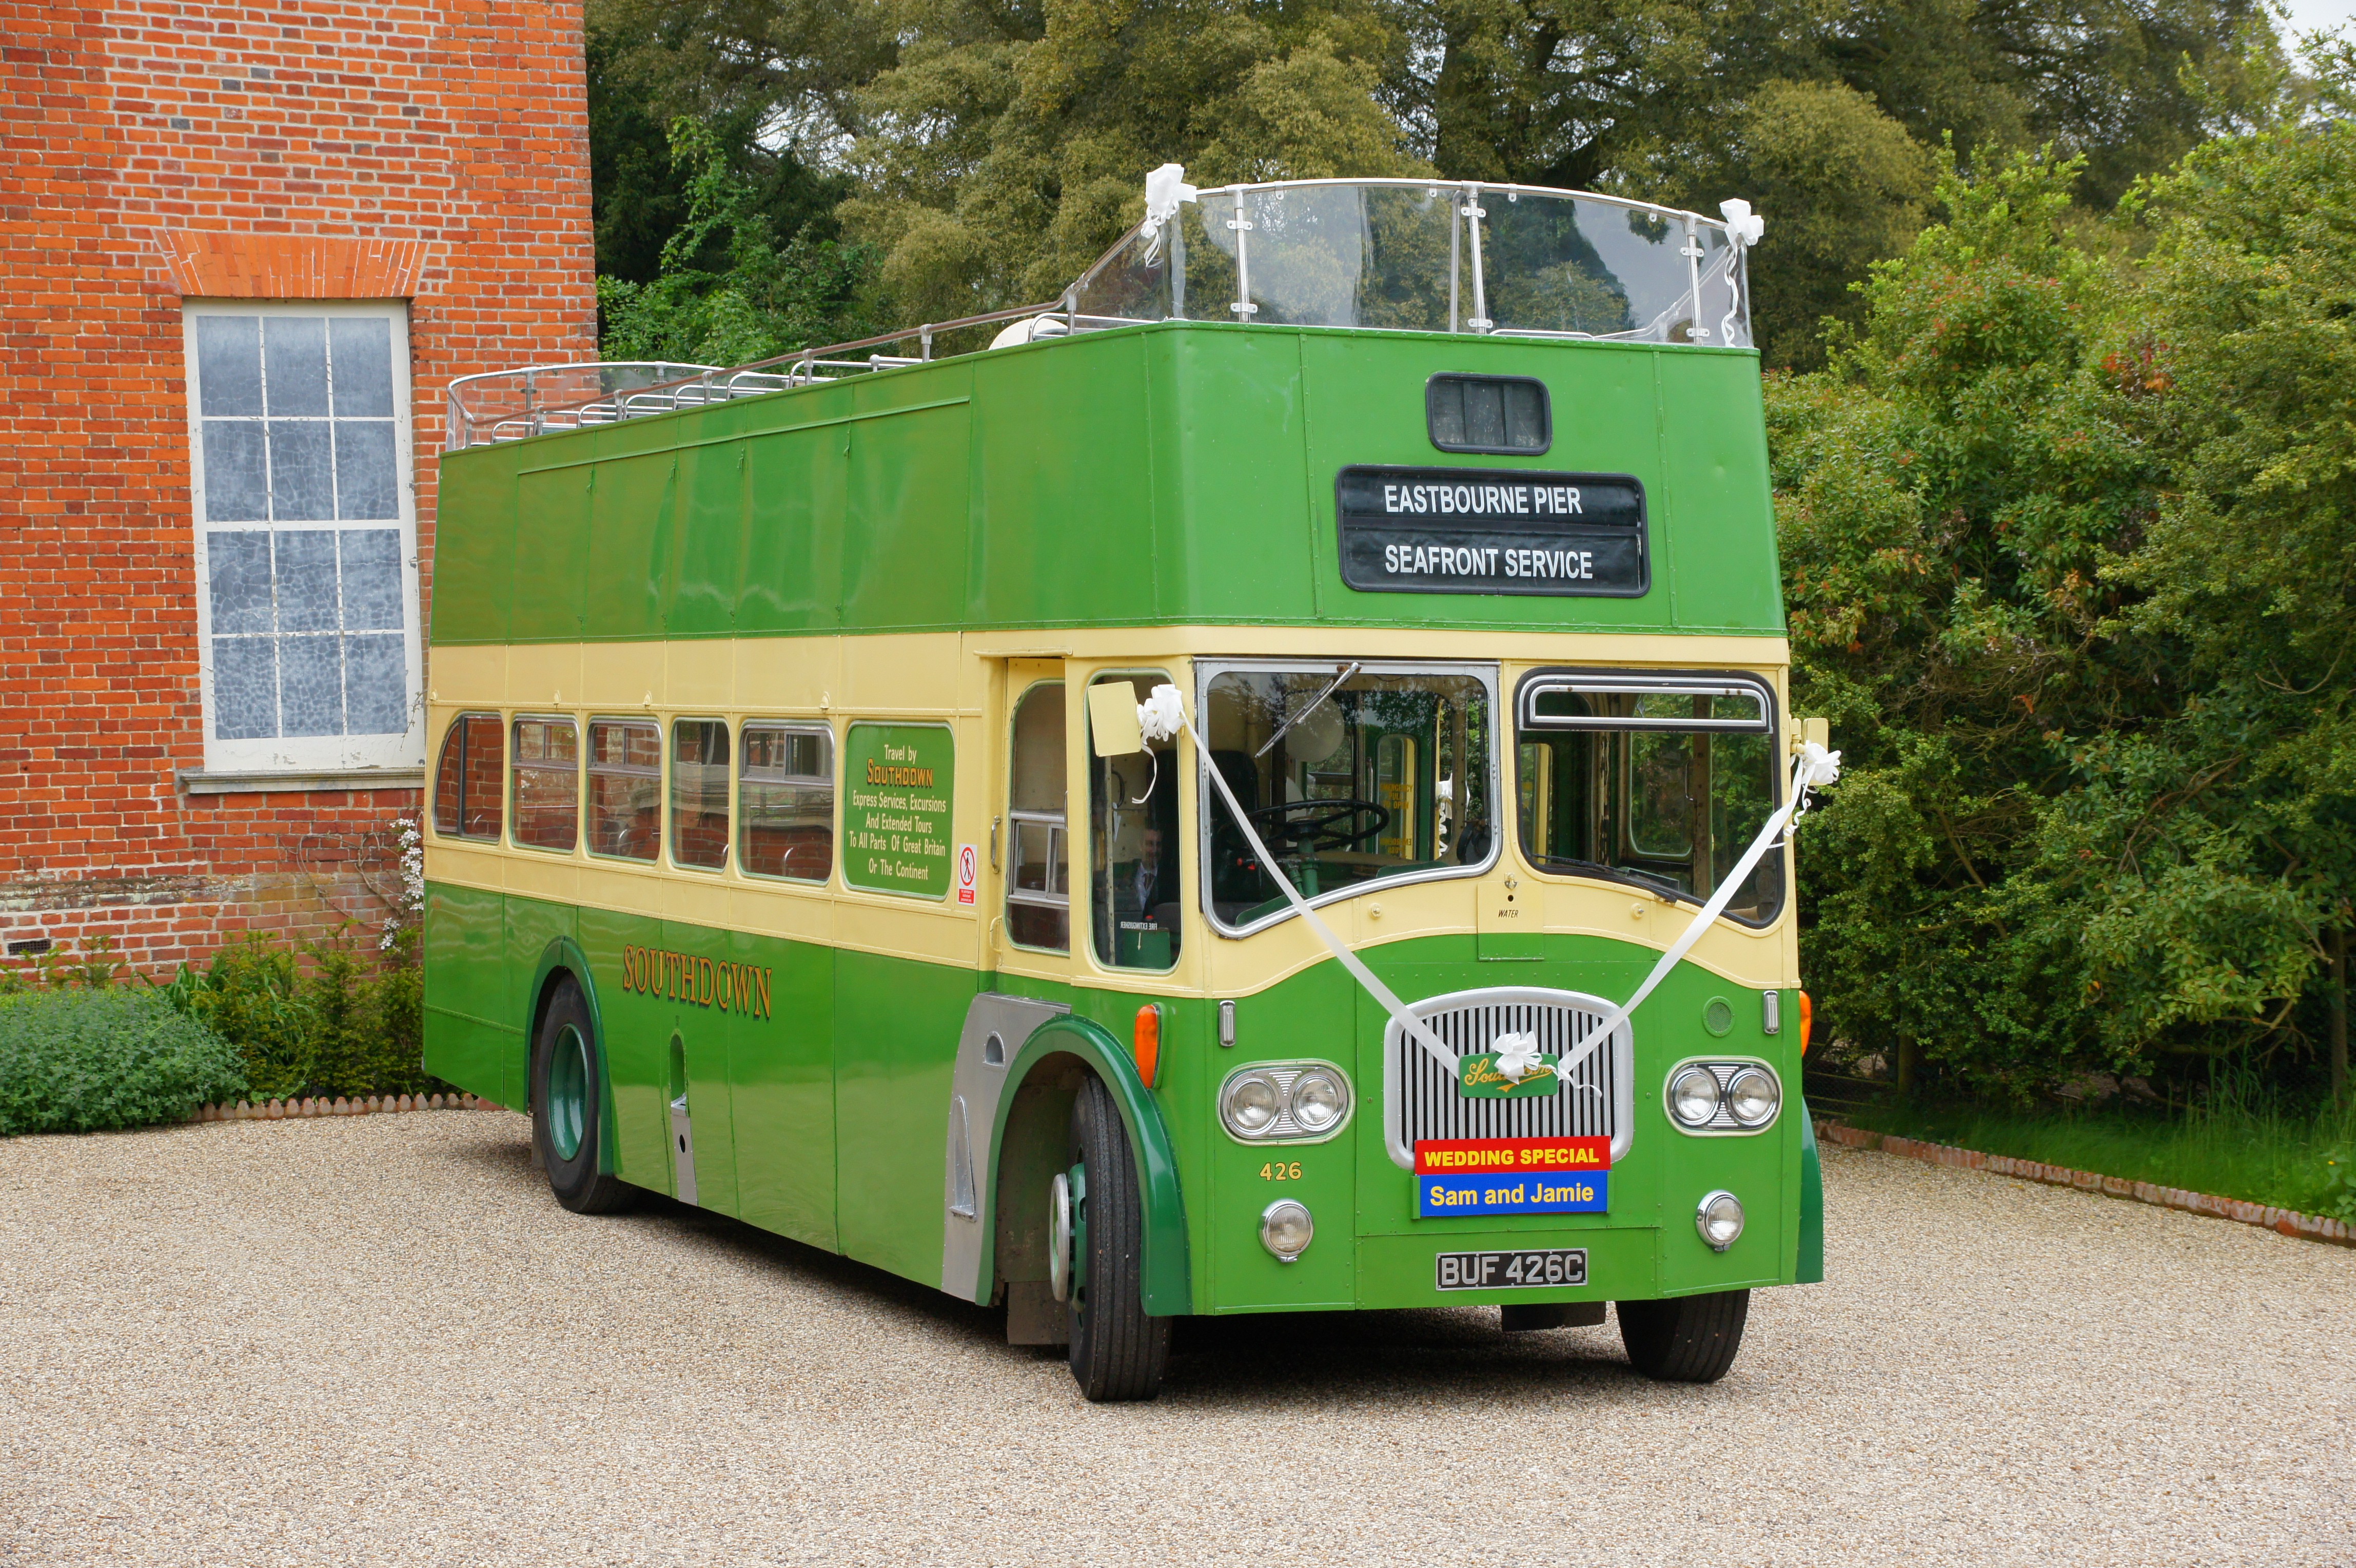 Southdown bus 426 (BUF 426C), 1 June 2013 (2)